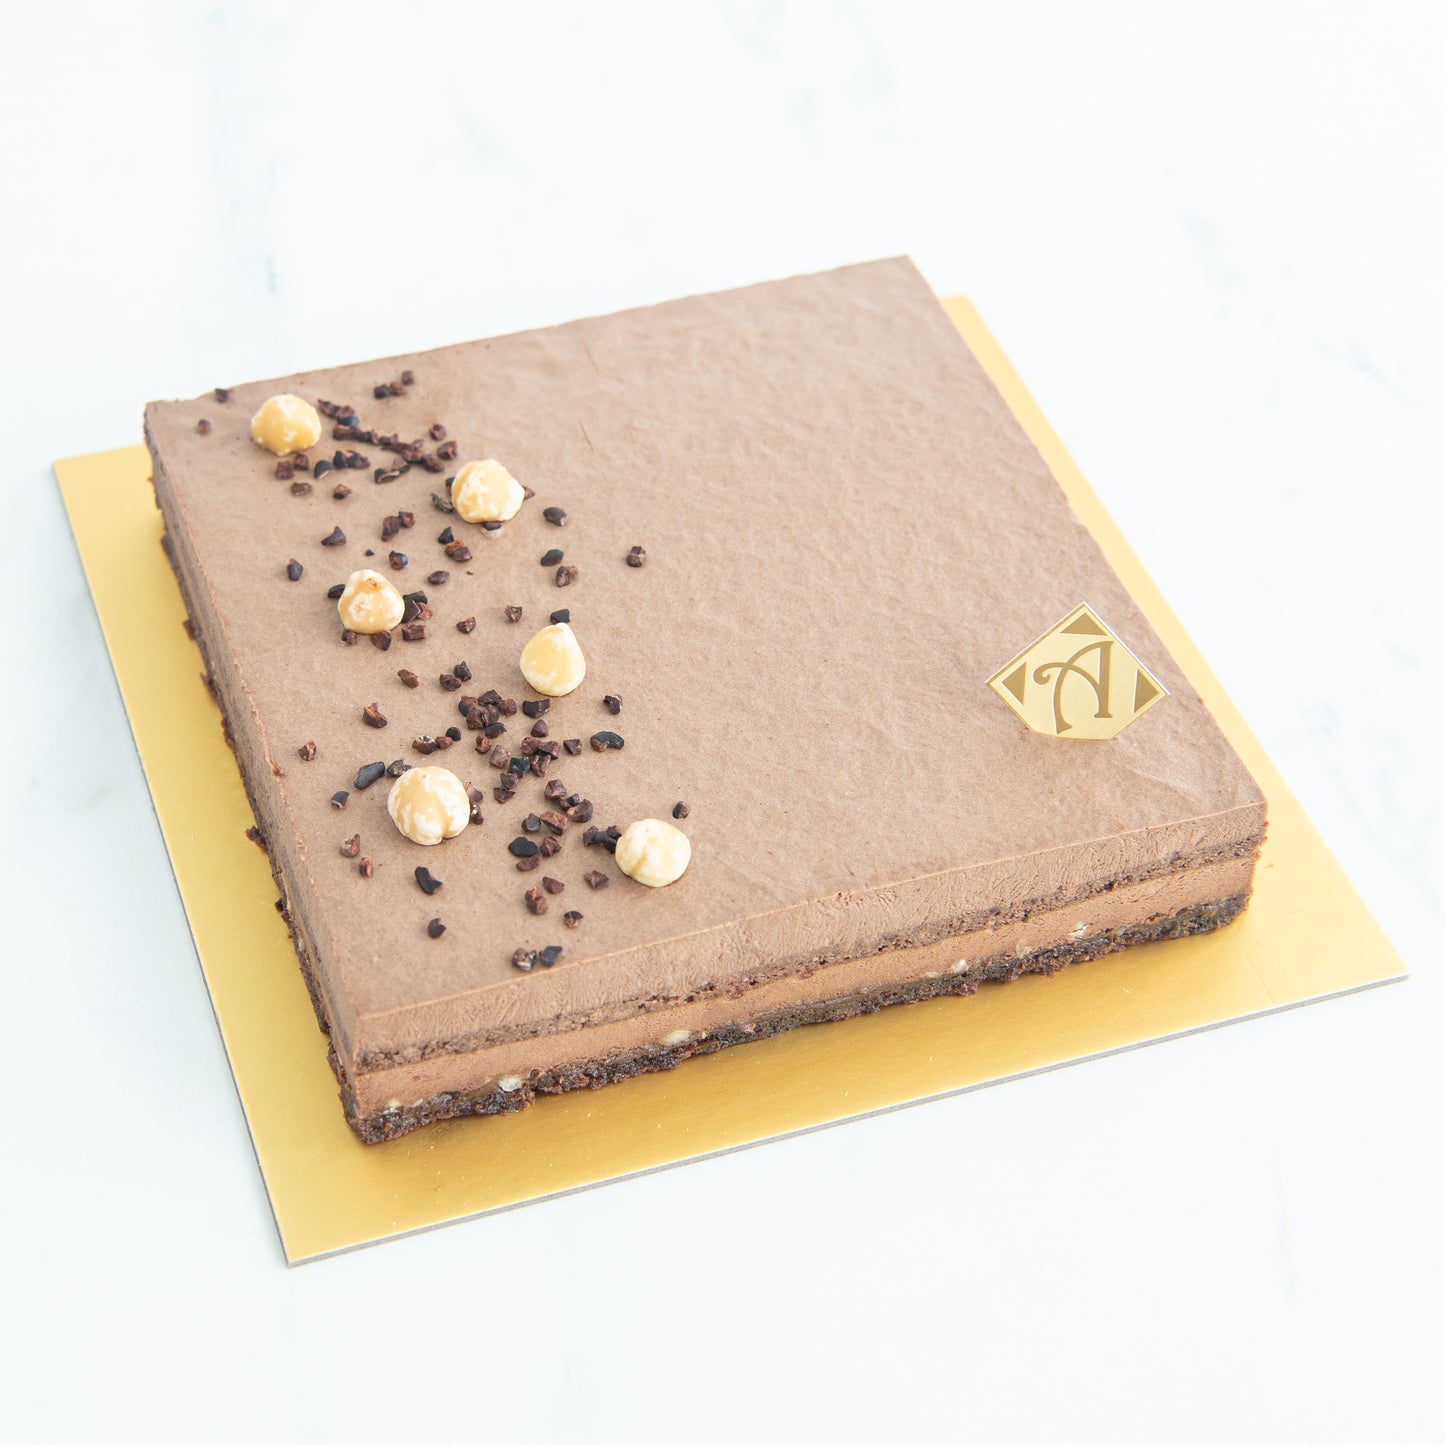 Sugar Free | Keto Friendly | Low Carb | Gluten free | Hazelnut Cake Upsize 18x18 cm | $69.90 nett